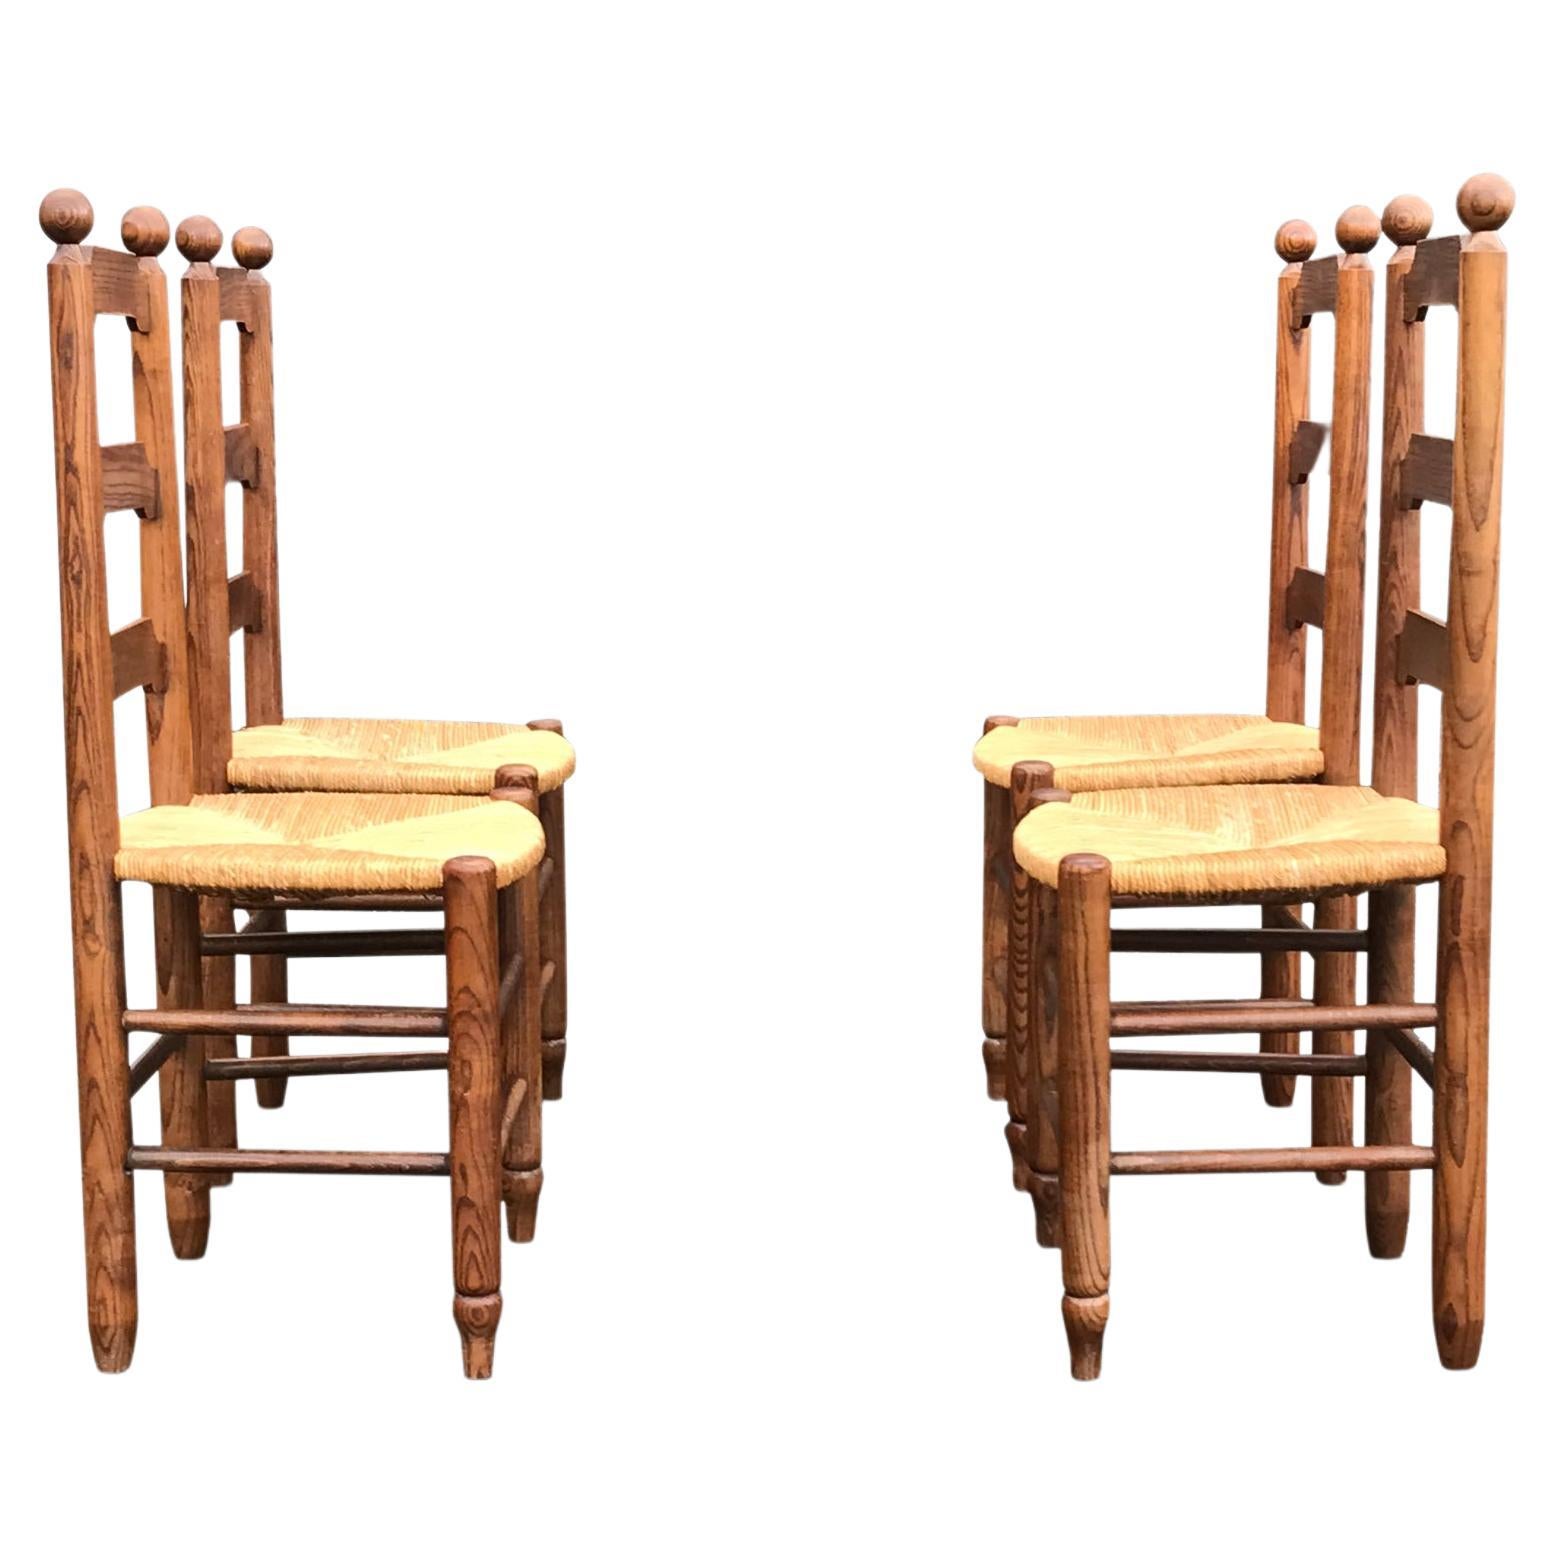 Chaise de salle à manger rustique en chêne et osier Georges Robert The France 1960s, set of 4